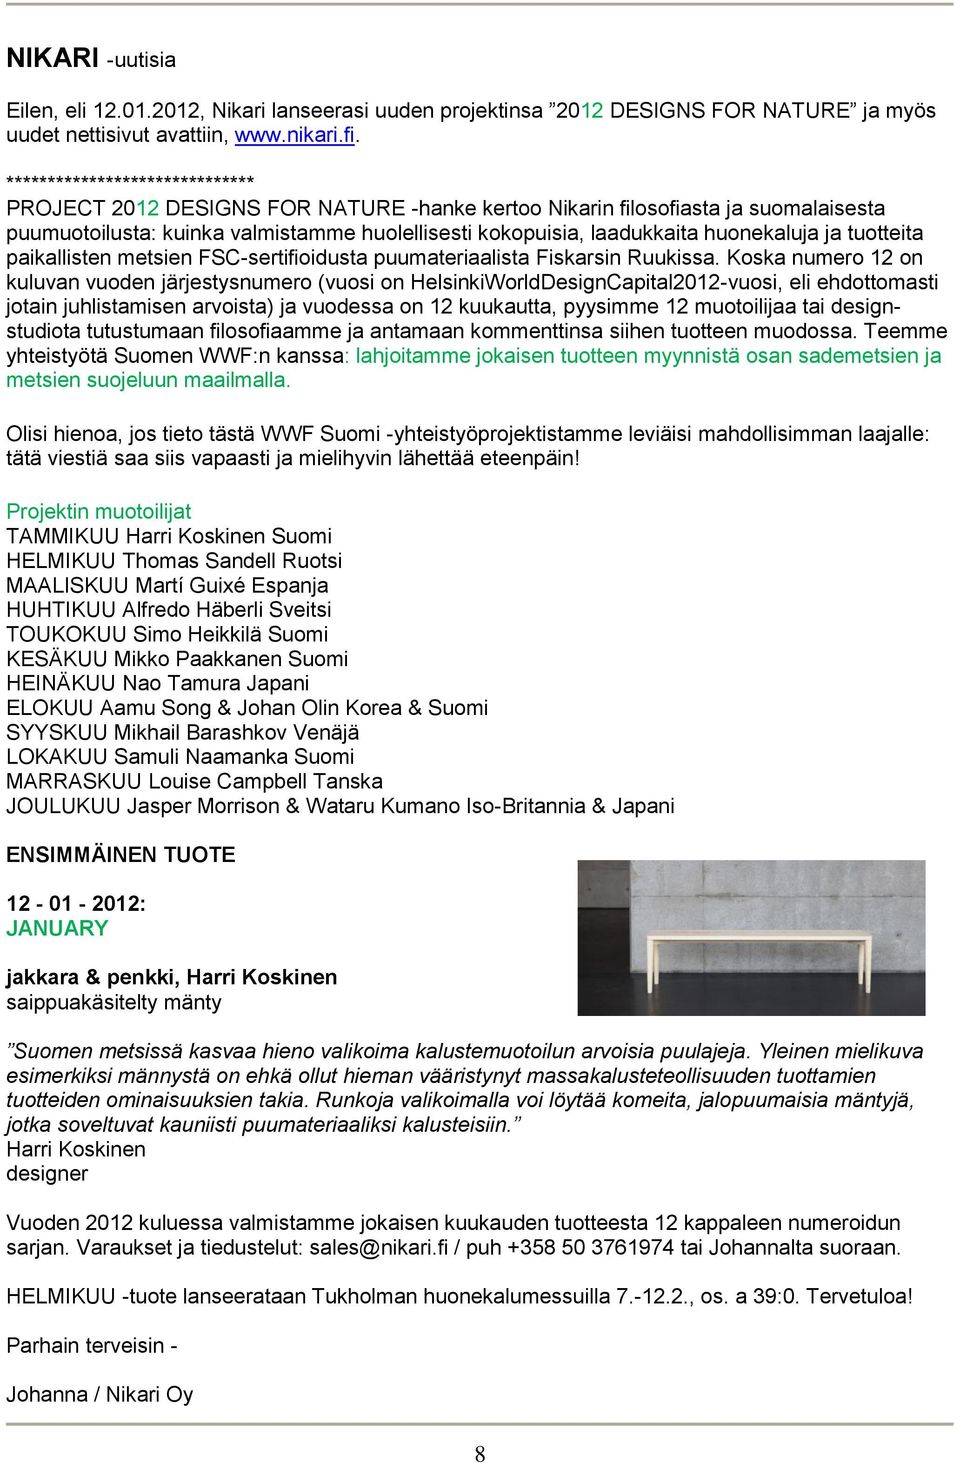 ja tuotteita paikallisten metsien FSC-sertifioidusta puumateriaalista Fiskarsin Ruukissa.